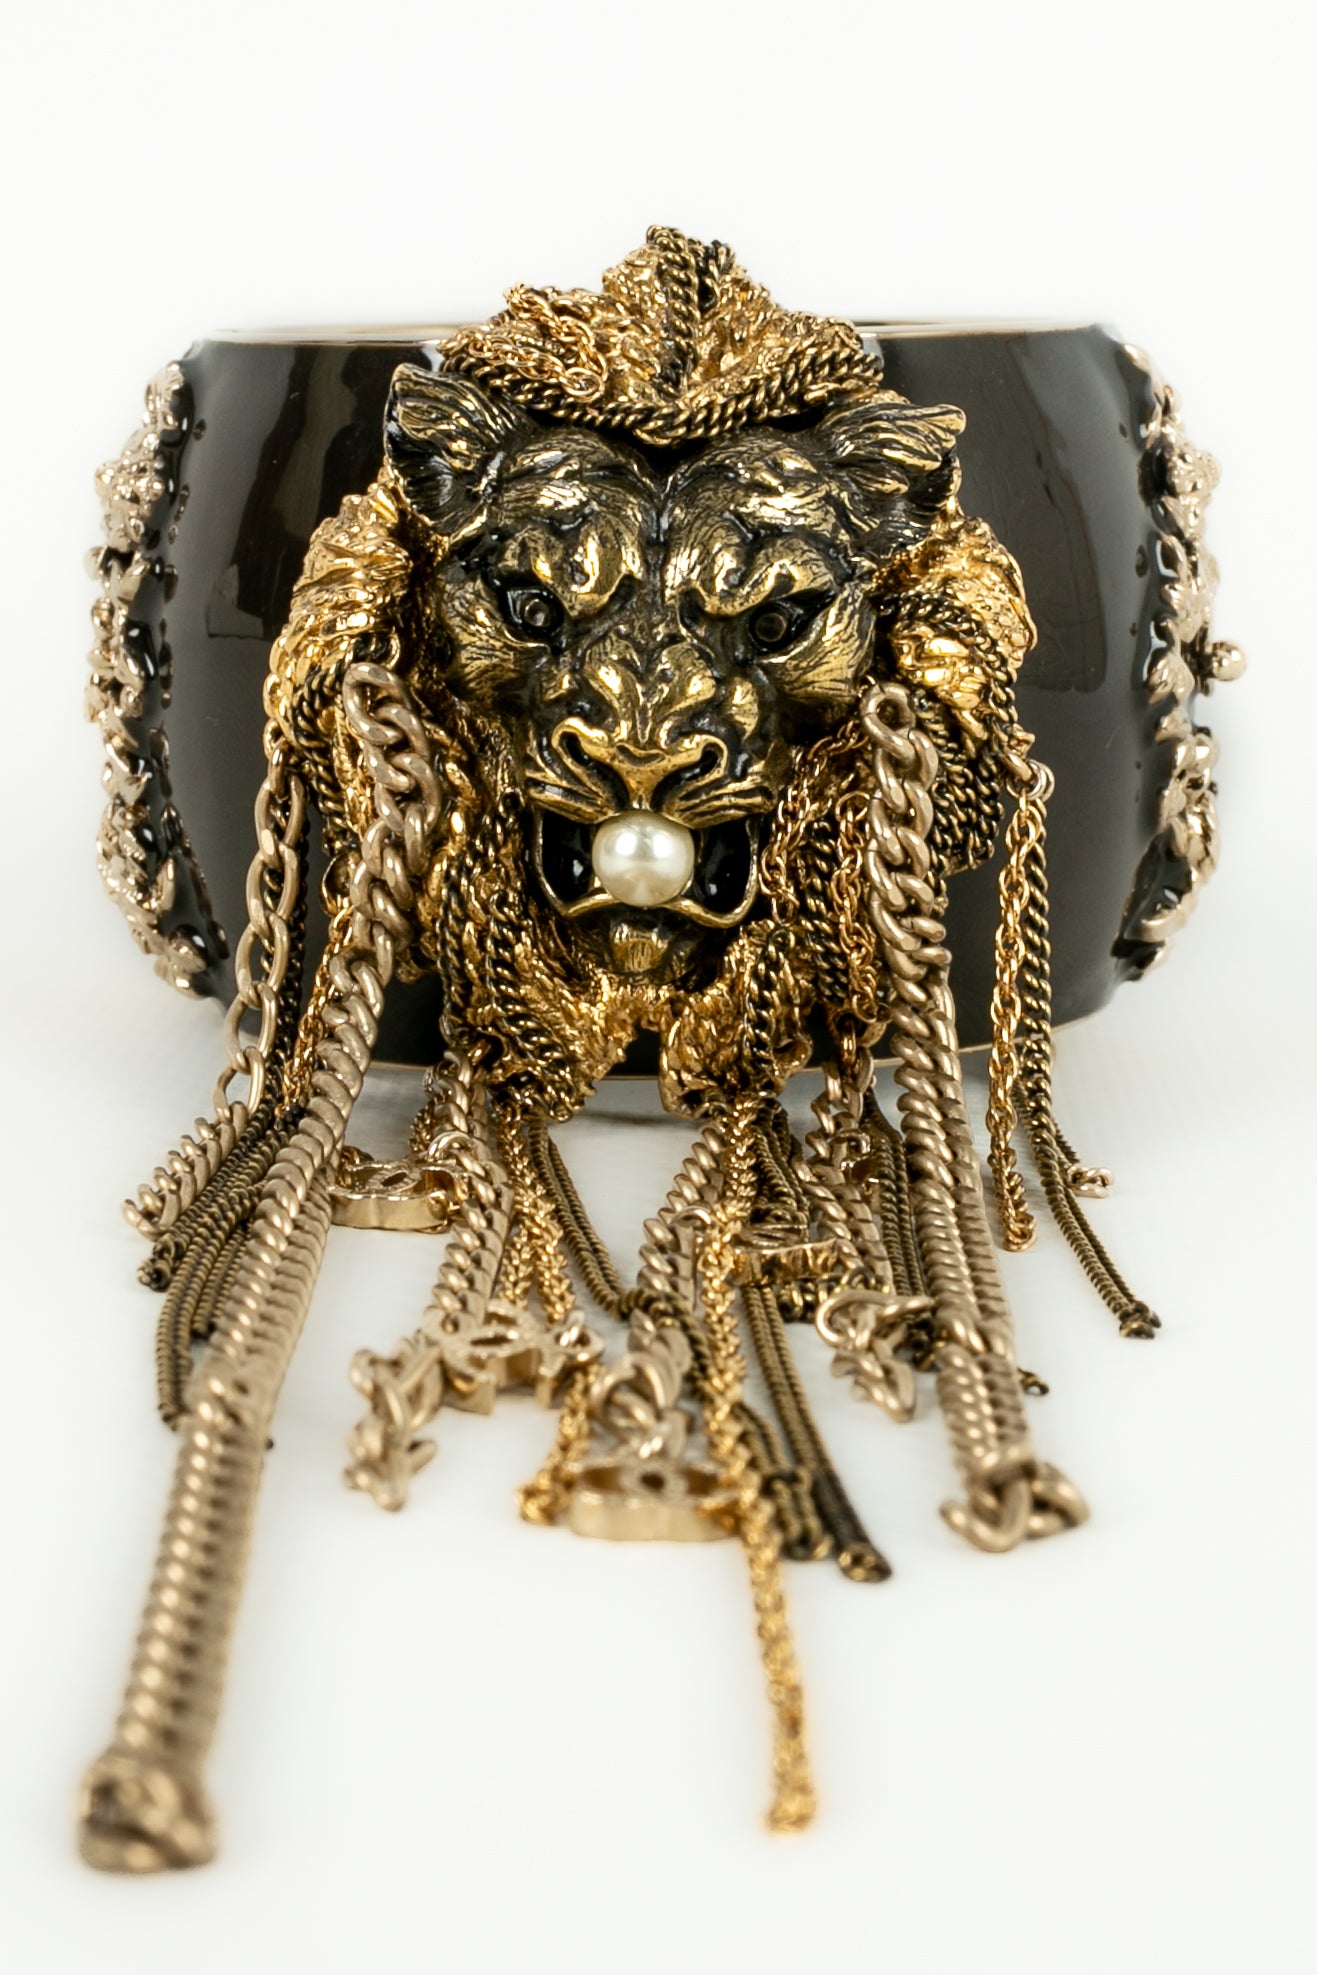 Bracelet "tête de lion" Chanel 2011